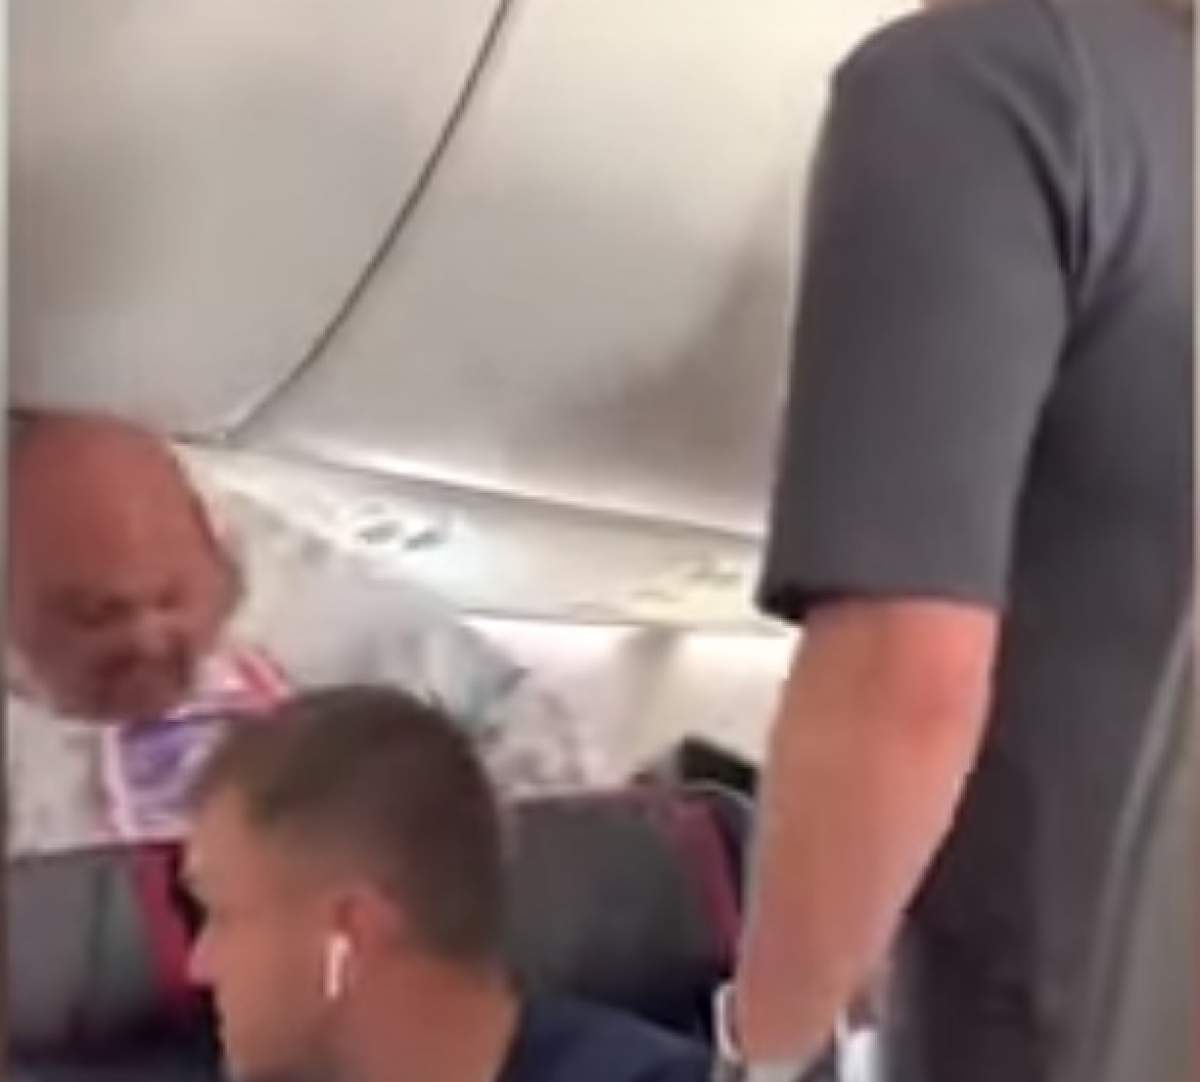 Criză de gelozie, în avion! O femeie i-a spart laptopul în cap iubitului. Ce gest a enervat-o. VIDEO